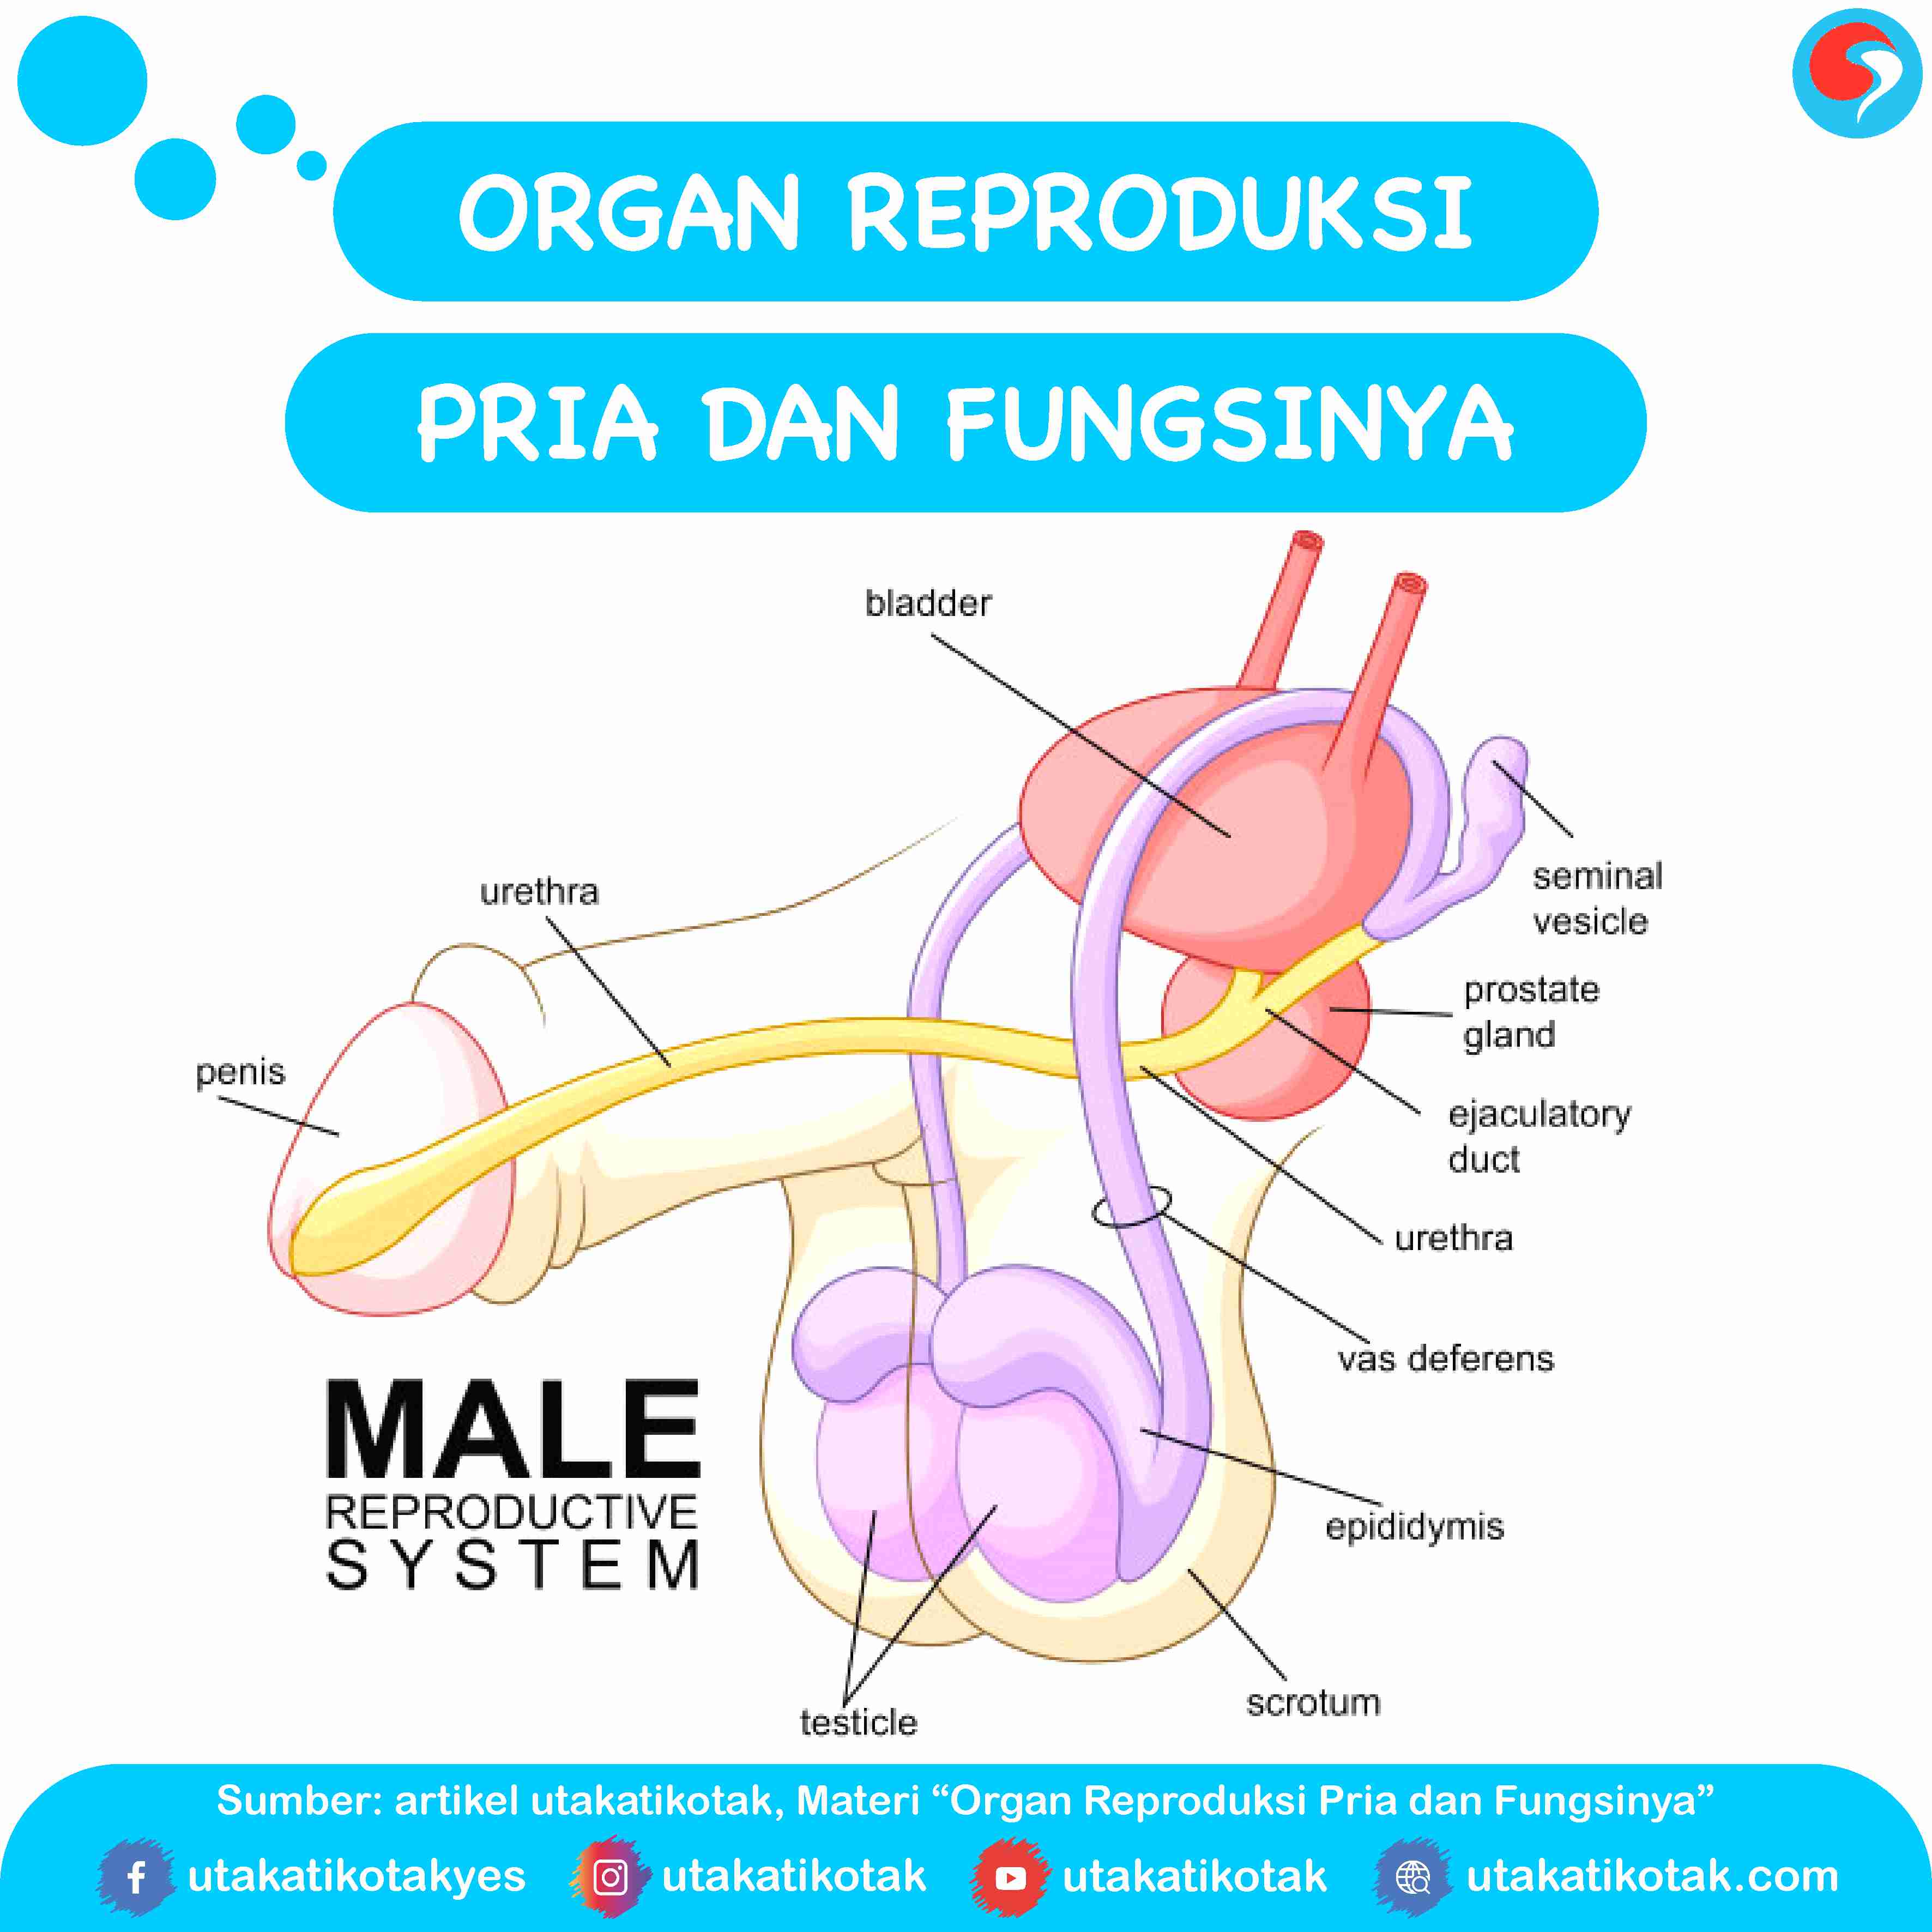 Organ Reproduksi Pria dan Fungsinya